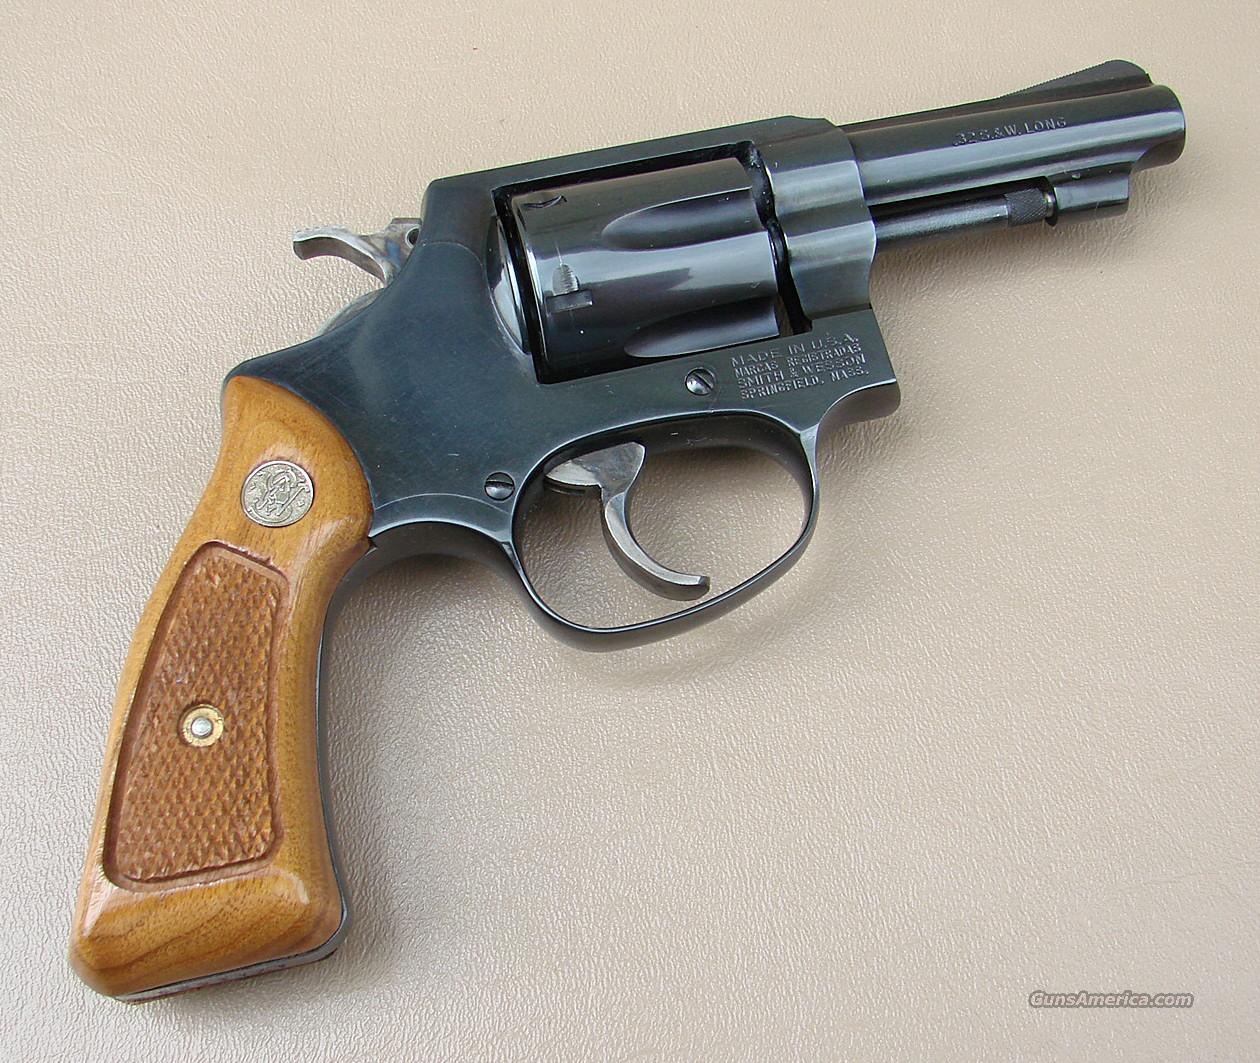 Smith and Wesson Model 31 Revolver ... for sale at Gunsamerica.com ...